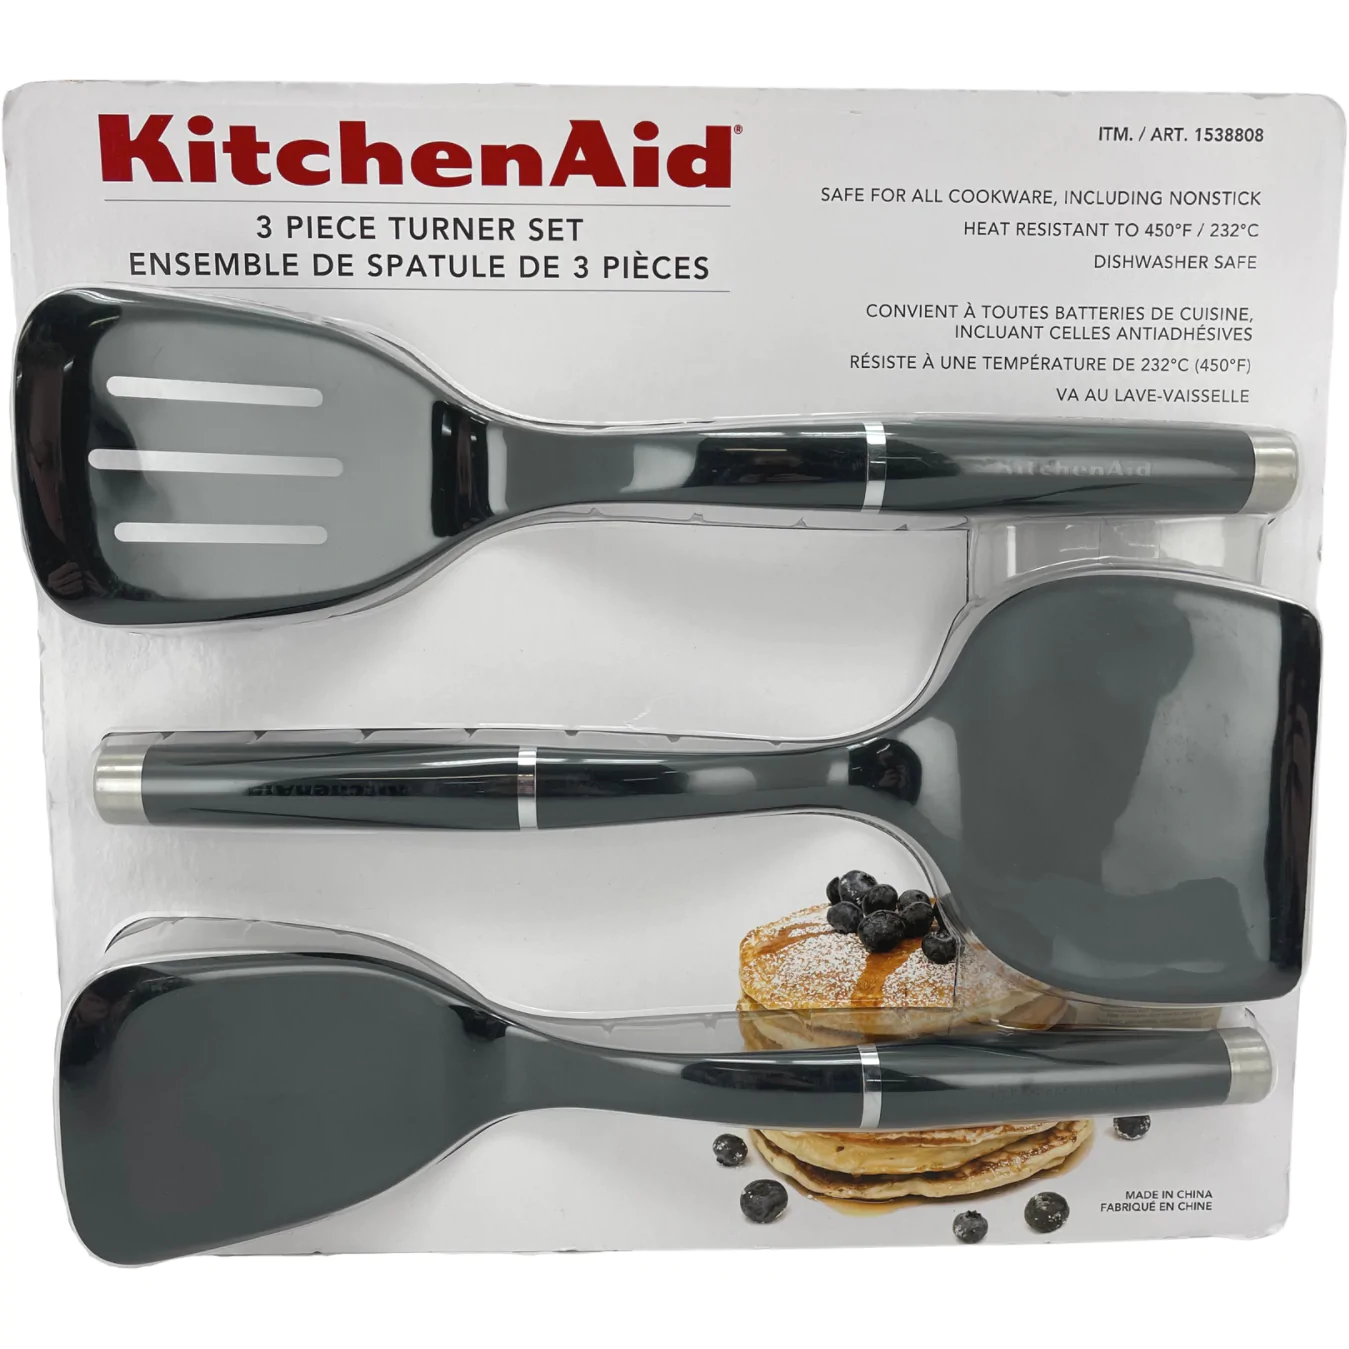 Kitchen Aid 3 Piece Turner Set / Spatula Set / Kitchen Utensils / Dishwasher Safe